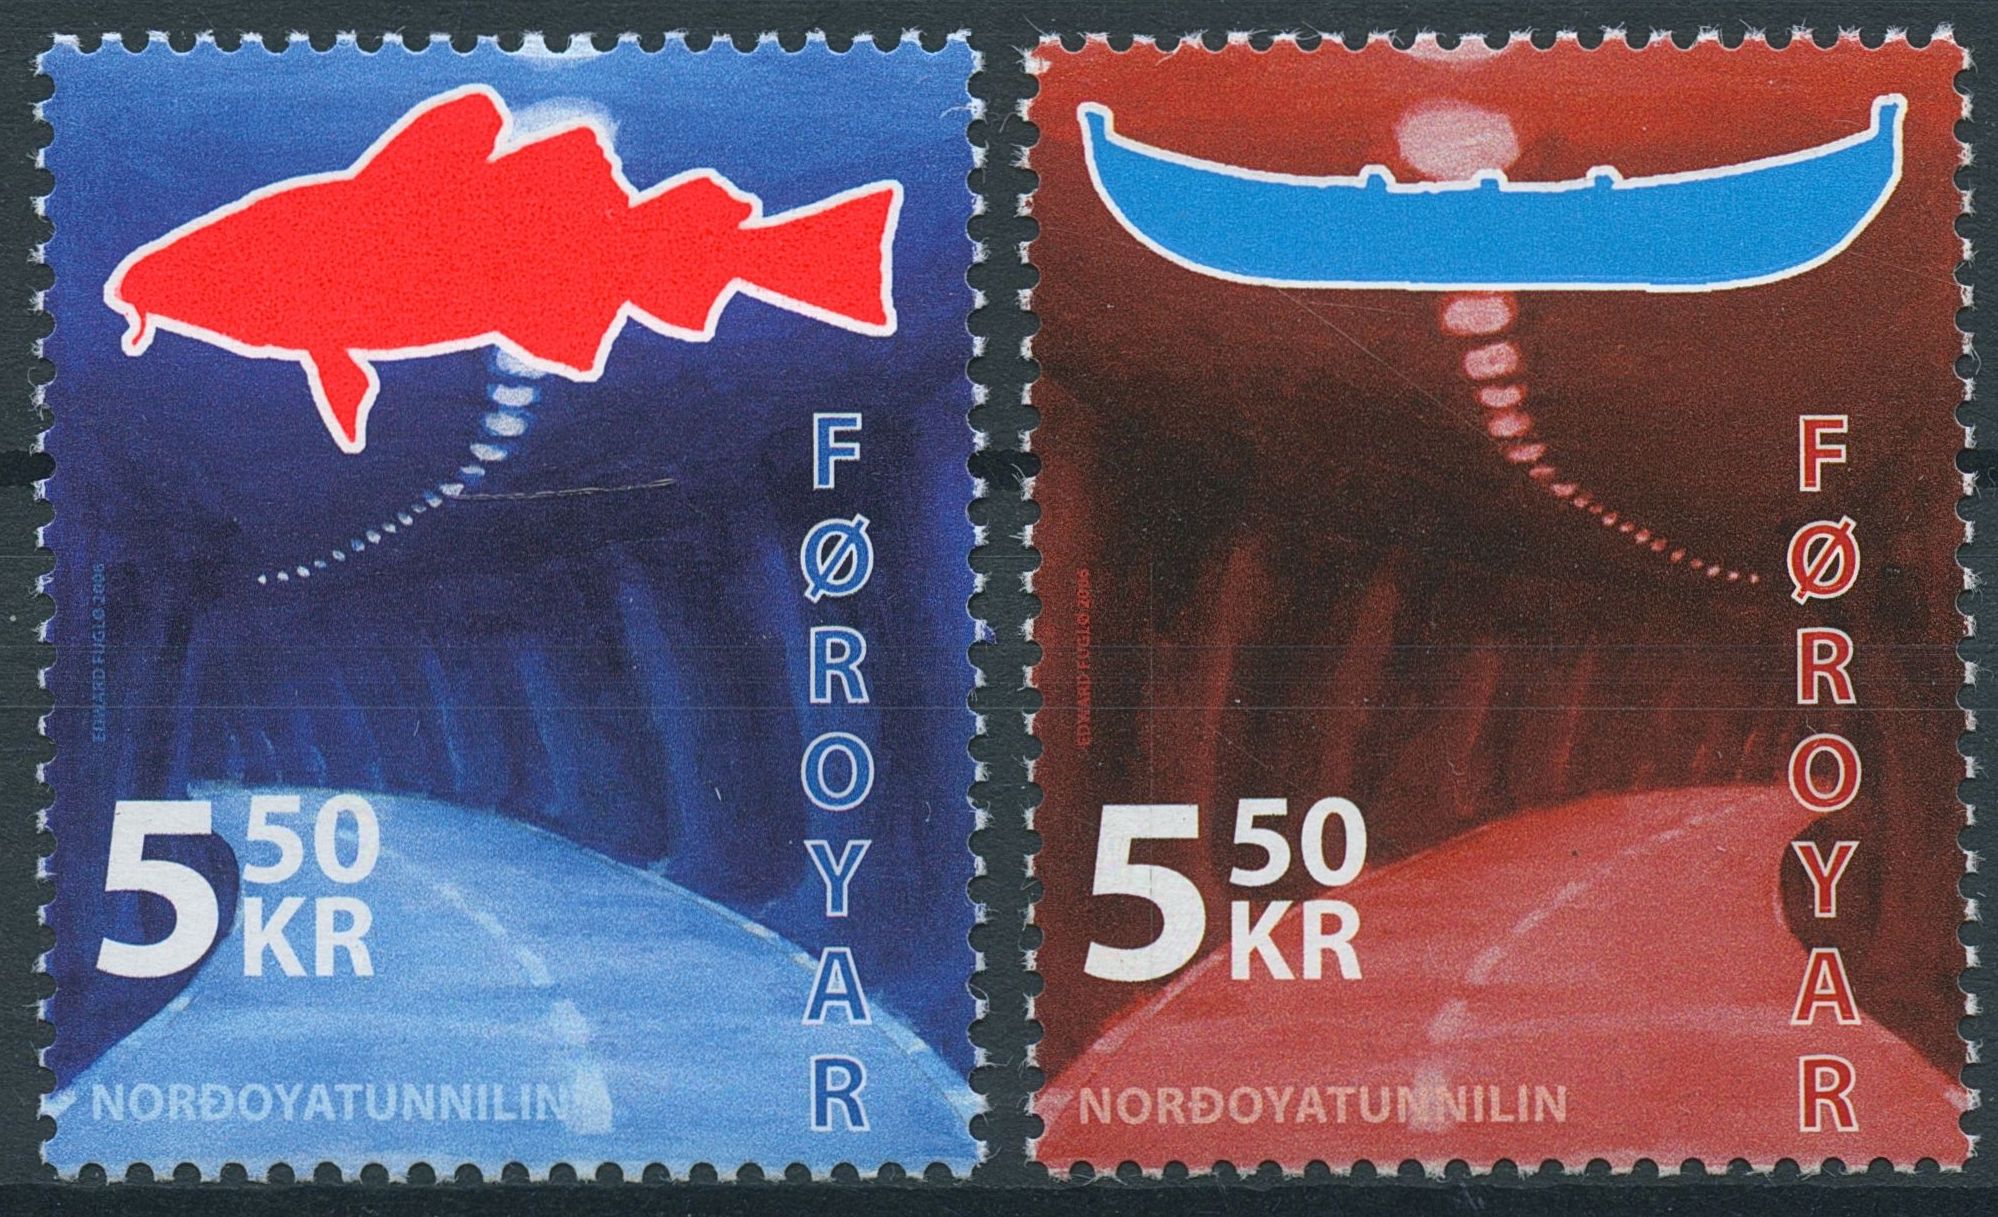 Faroe Islands Foroyar 2006 MNH Nordoyatunnilin Tunnel Eystruroy Bordoy SG#520-1